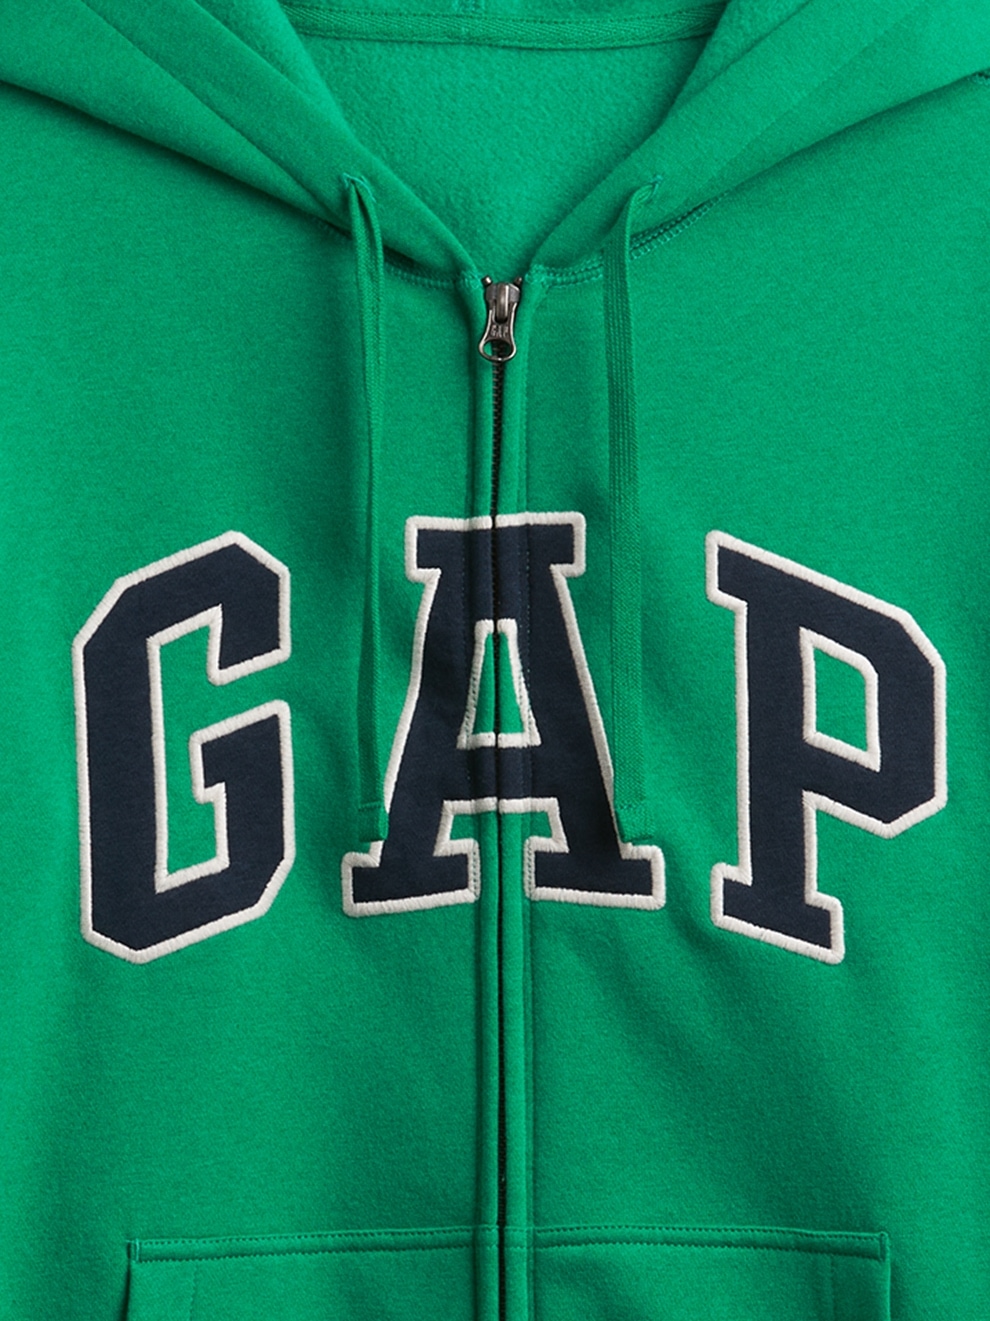 GAP Men's Logo Heritage Hoodie Hooded Full Zip Sweatshirt